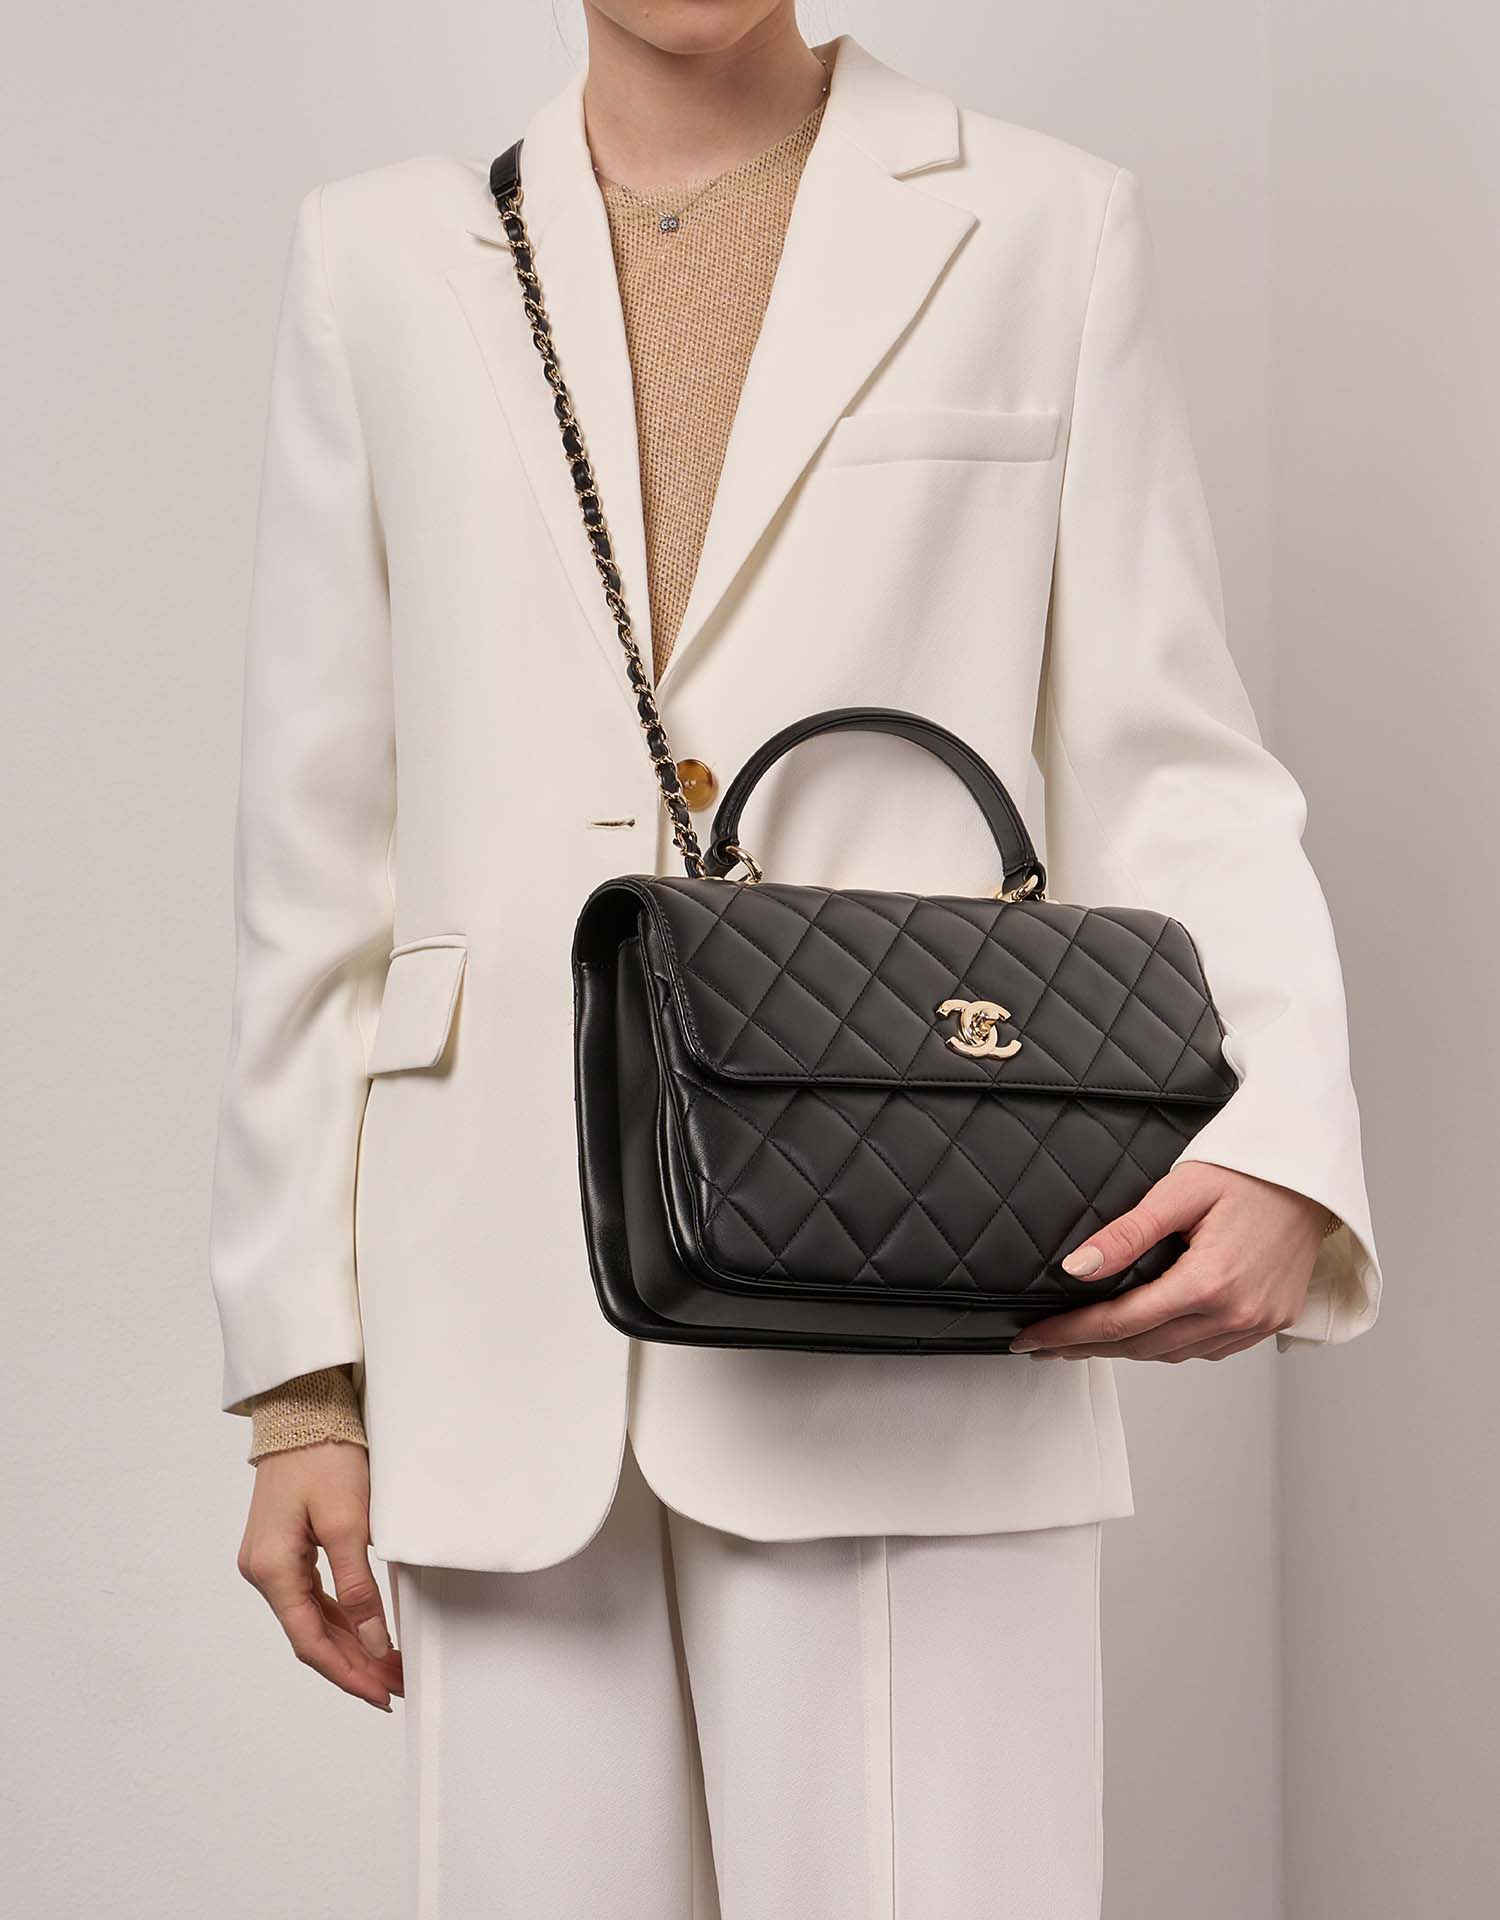 Chanel Trendy Large Black Sizes Worn | Verkaufen Sie Ihre Designer-Tasche auf Saclab.com